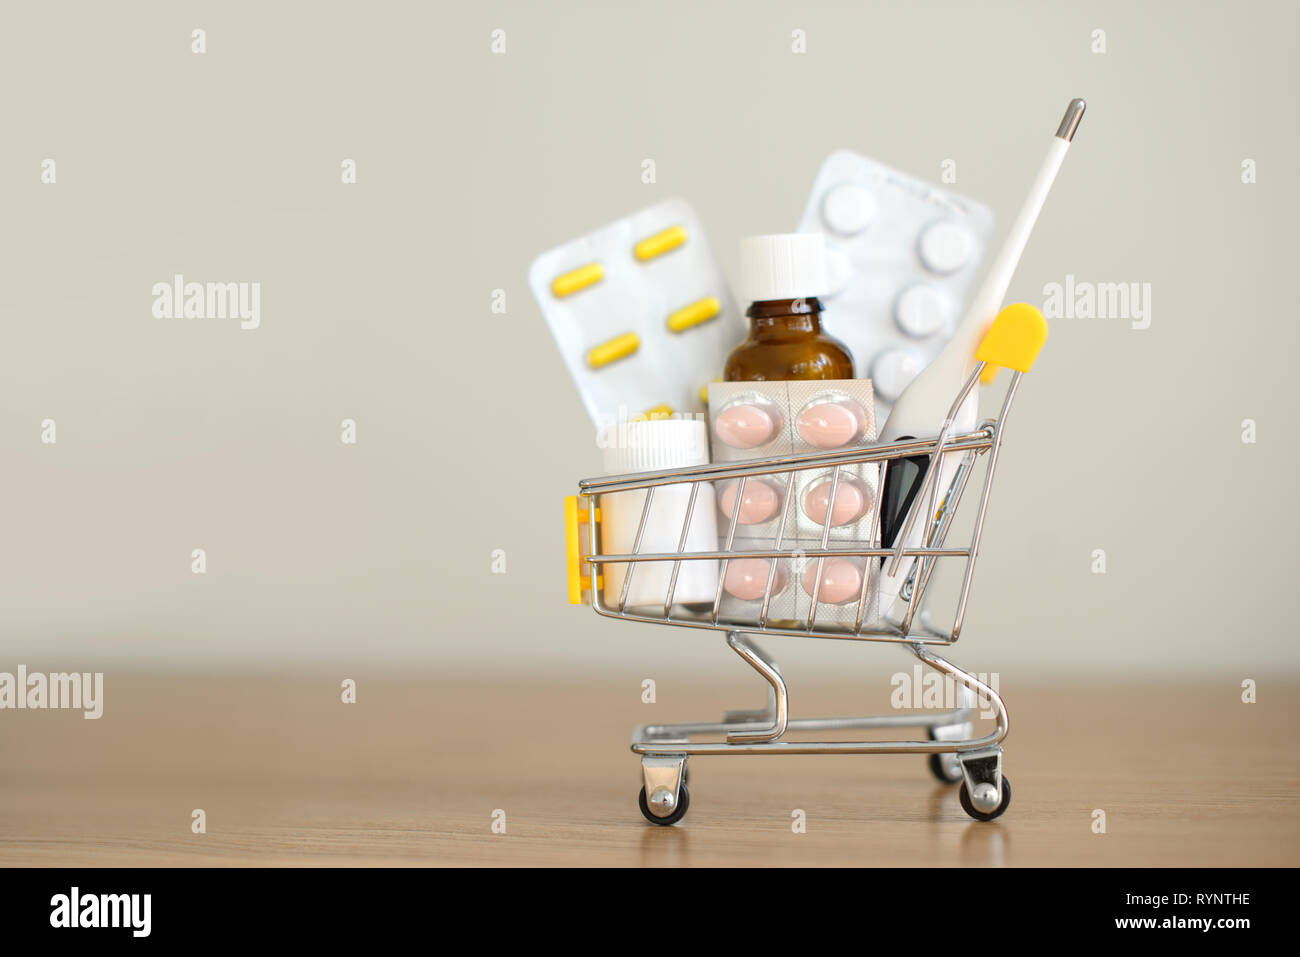 Carrello spesa giocattolo con medicamenti: pillole, blister, bottiglie di medici, termometro set. La cura della salute e la medicina del concetto. Copia gratuita dello spazio. Foto Stock